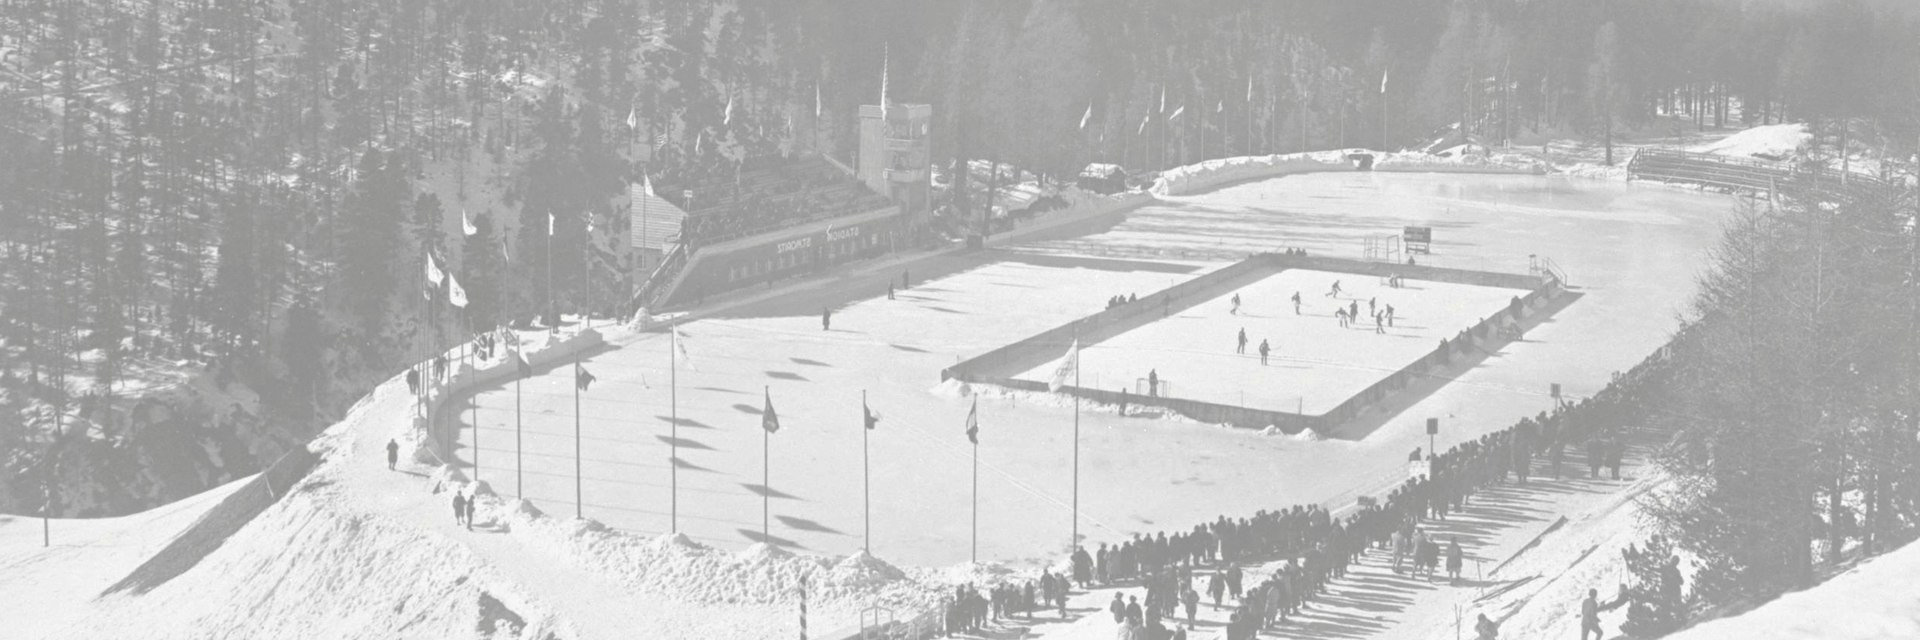 St. Moritz 1928 banner